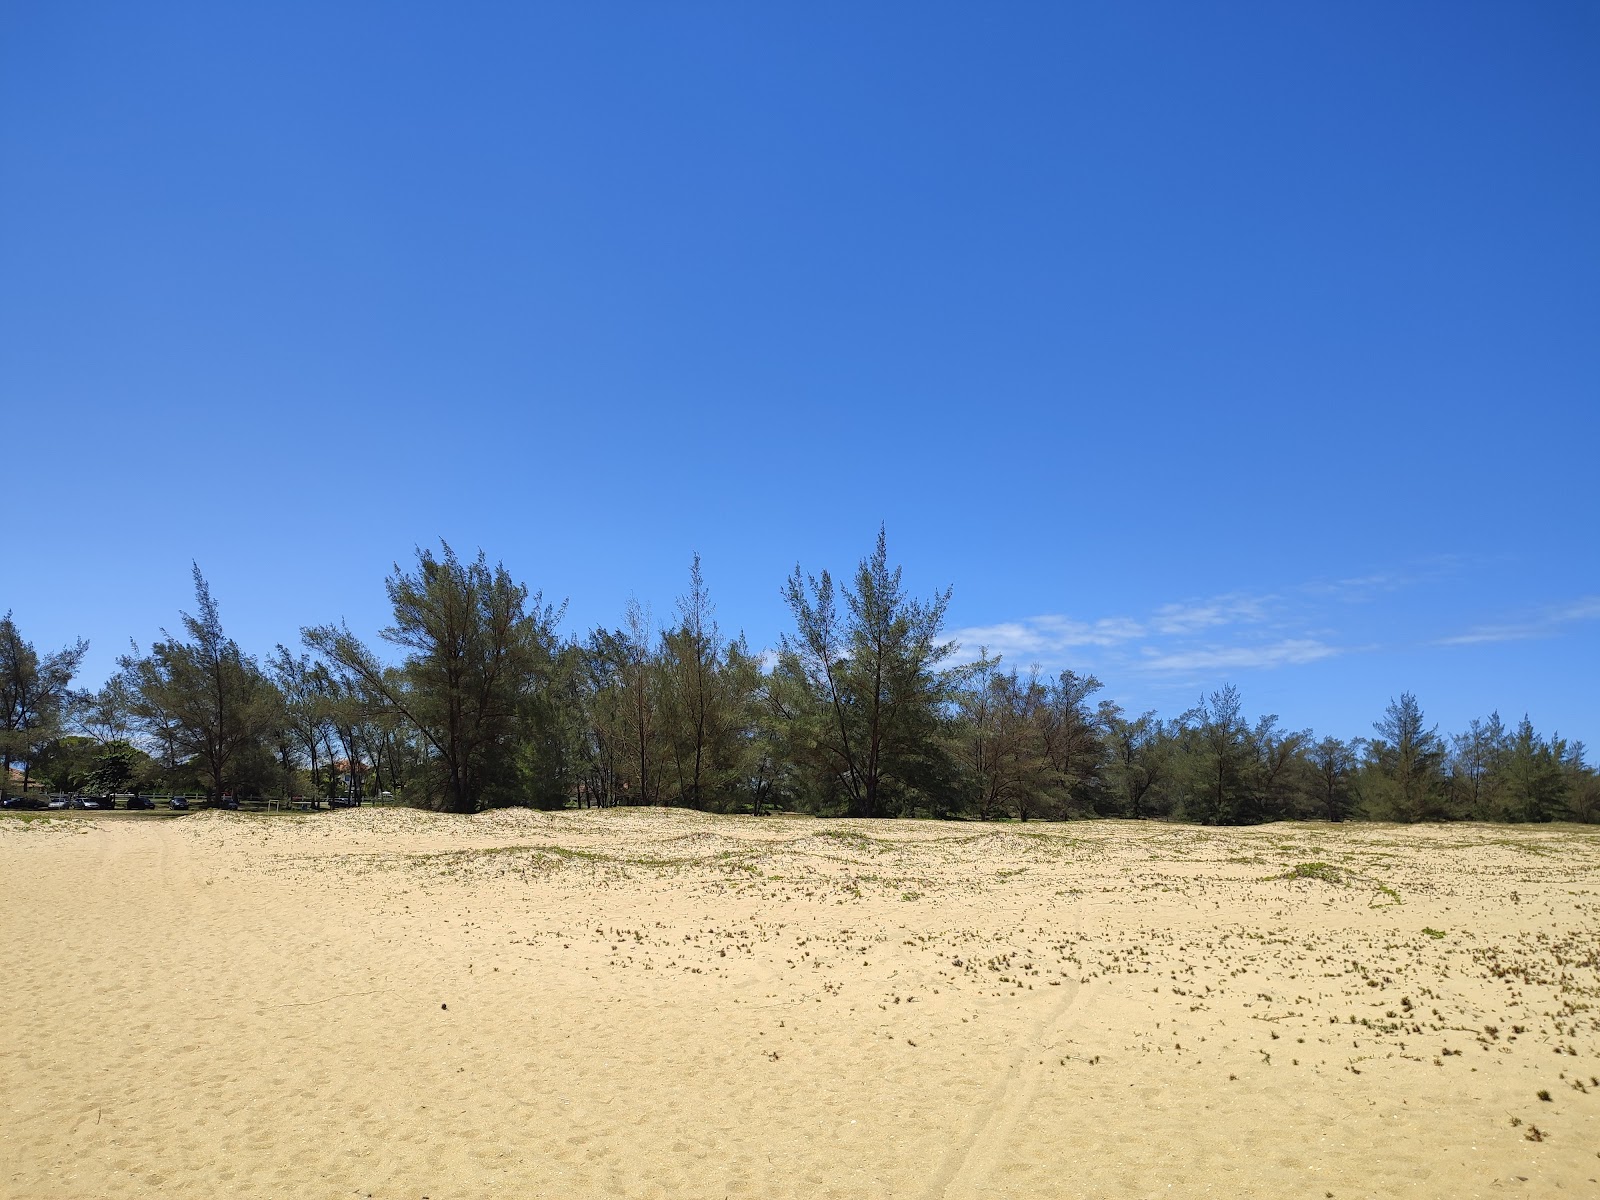 Foto de Playa Xexe con arena brillante superficie